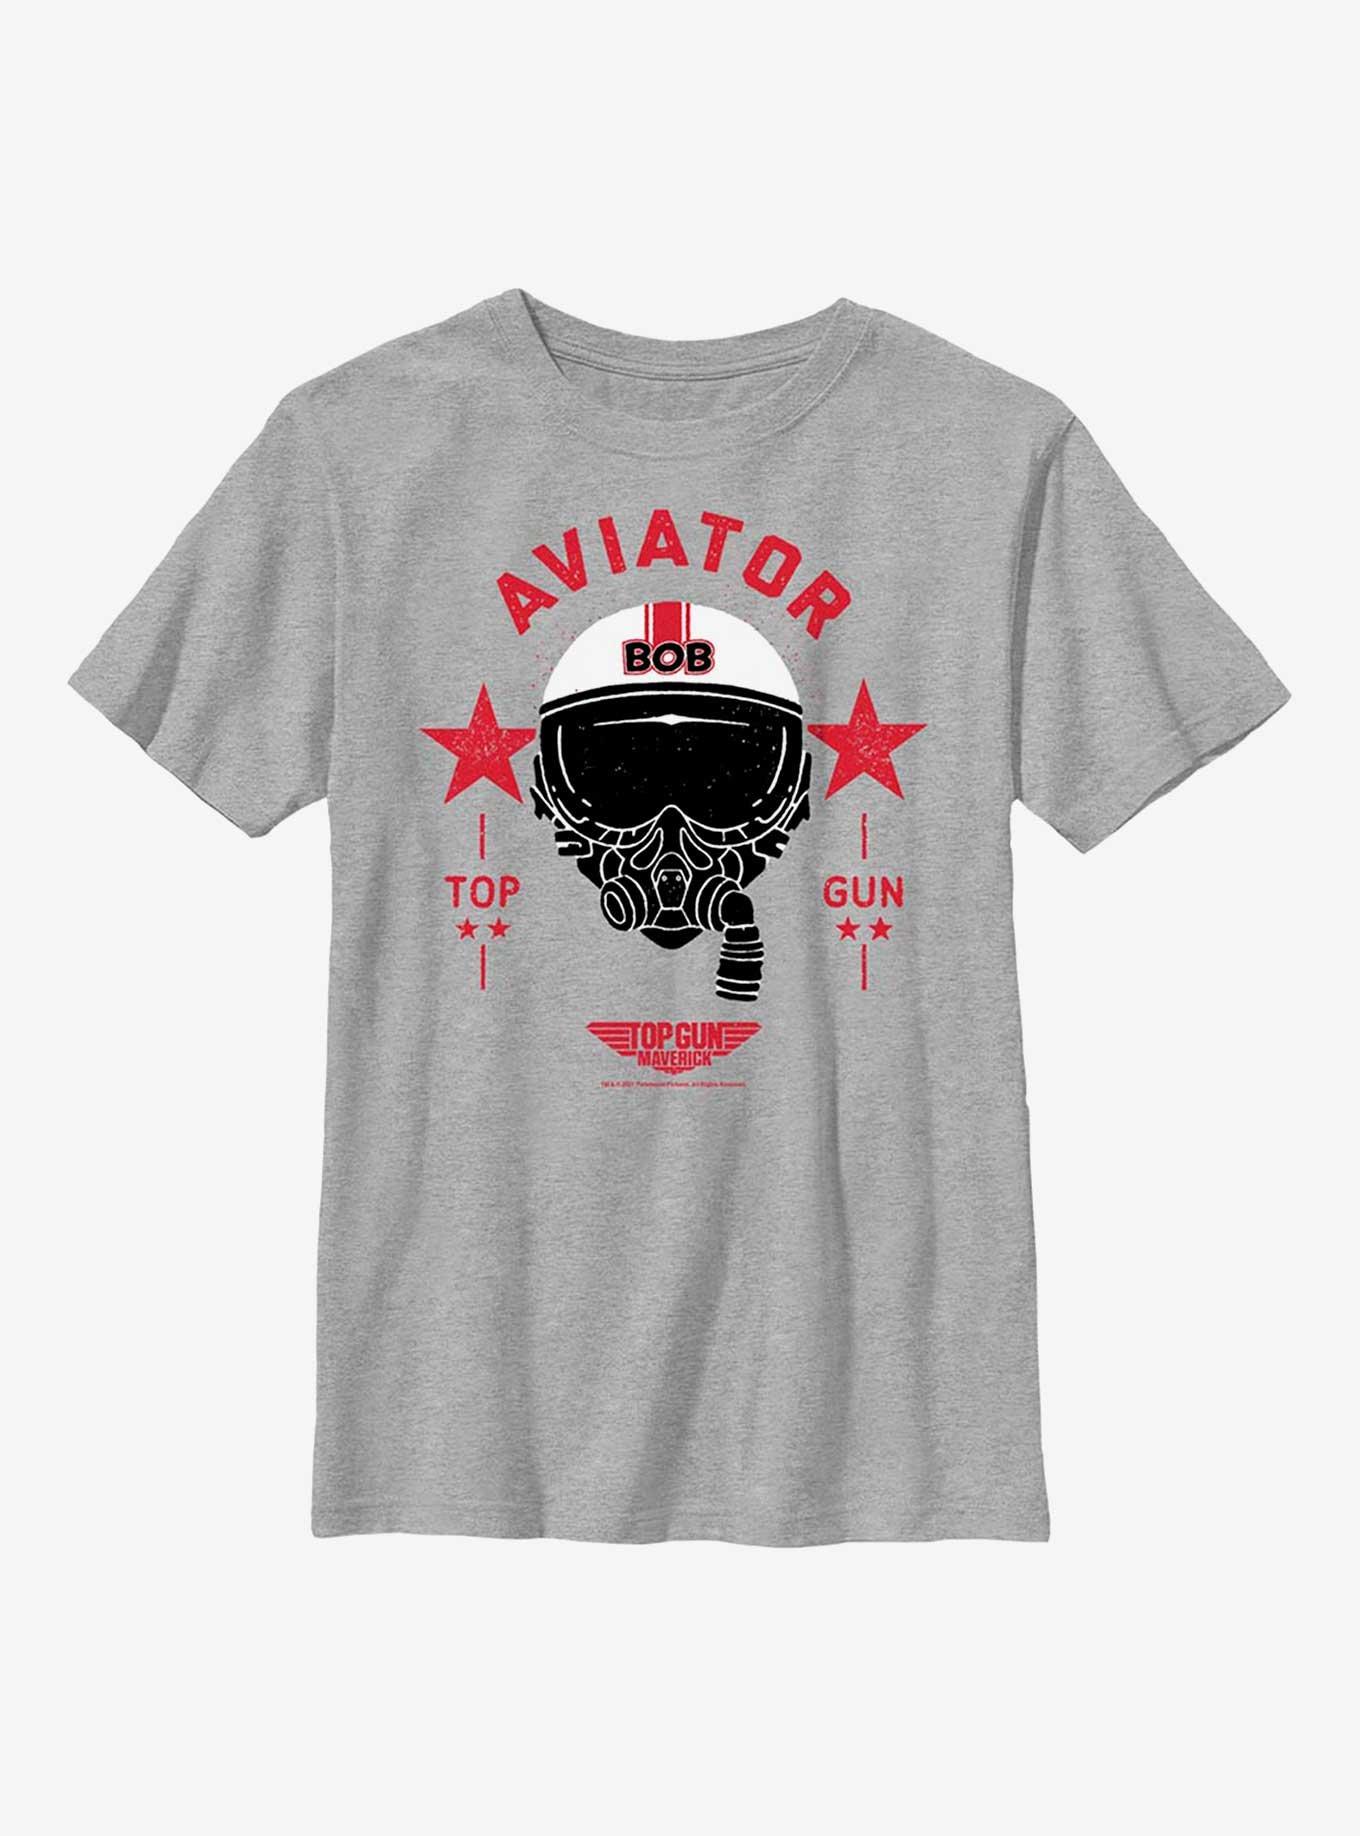 Top Gun: Maverick Bob Aviator Youth T-Shirt, ATH HTR, hi-res